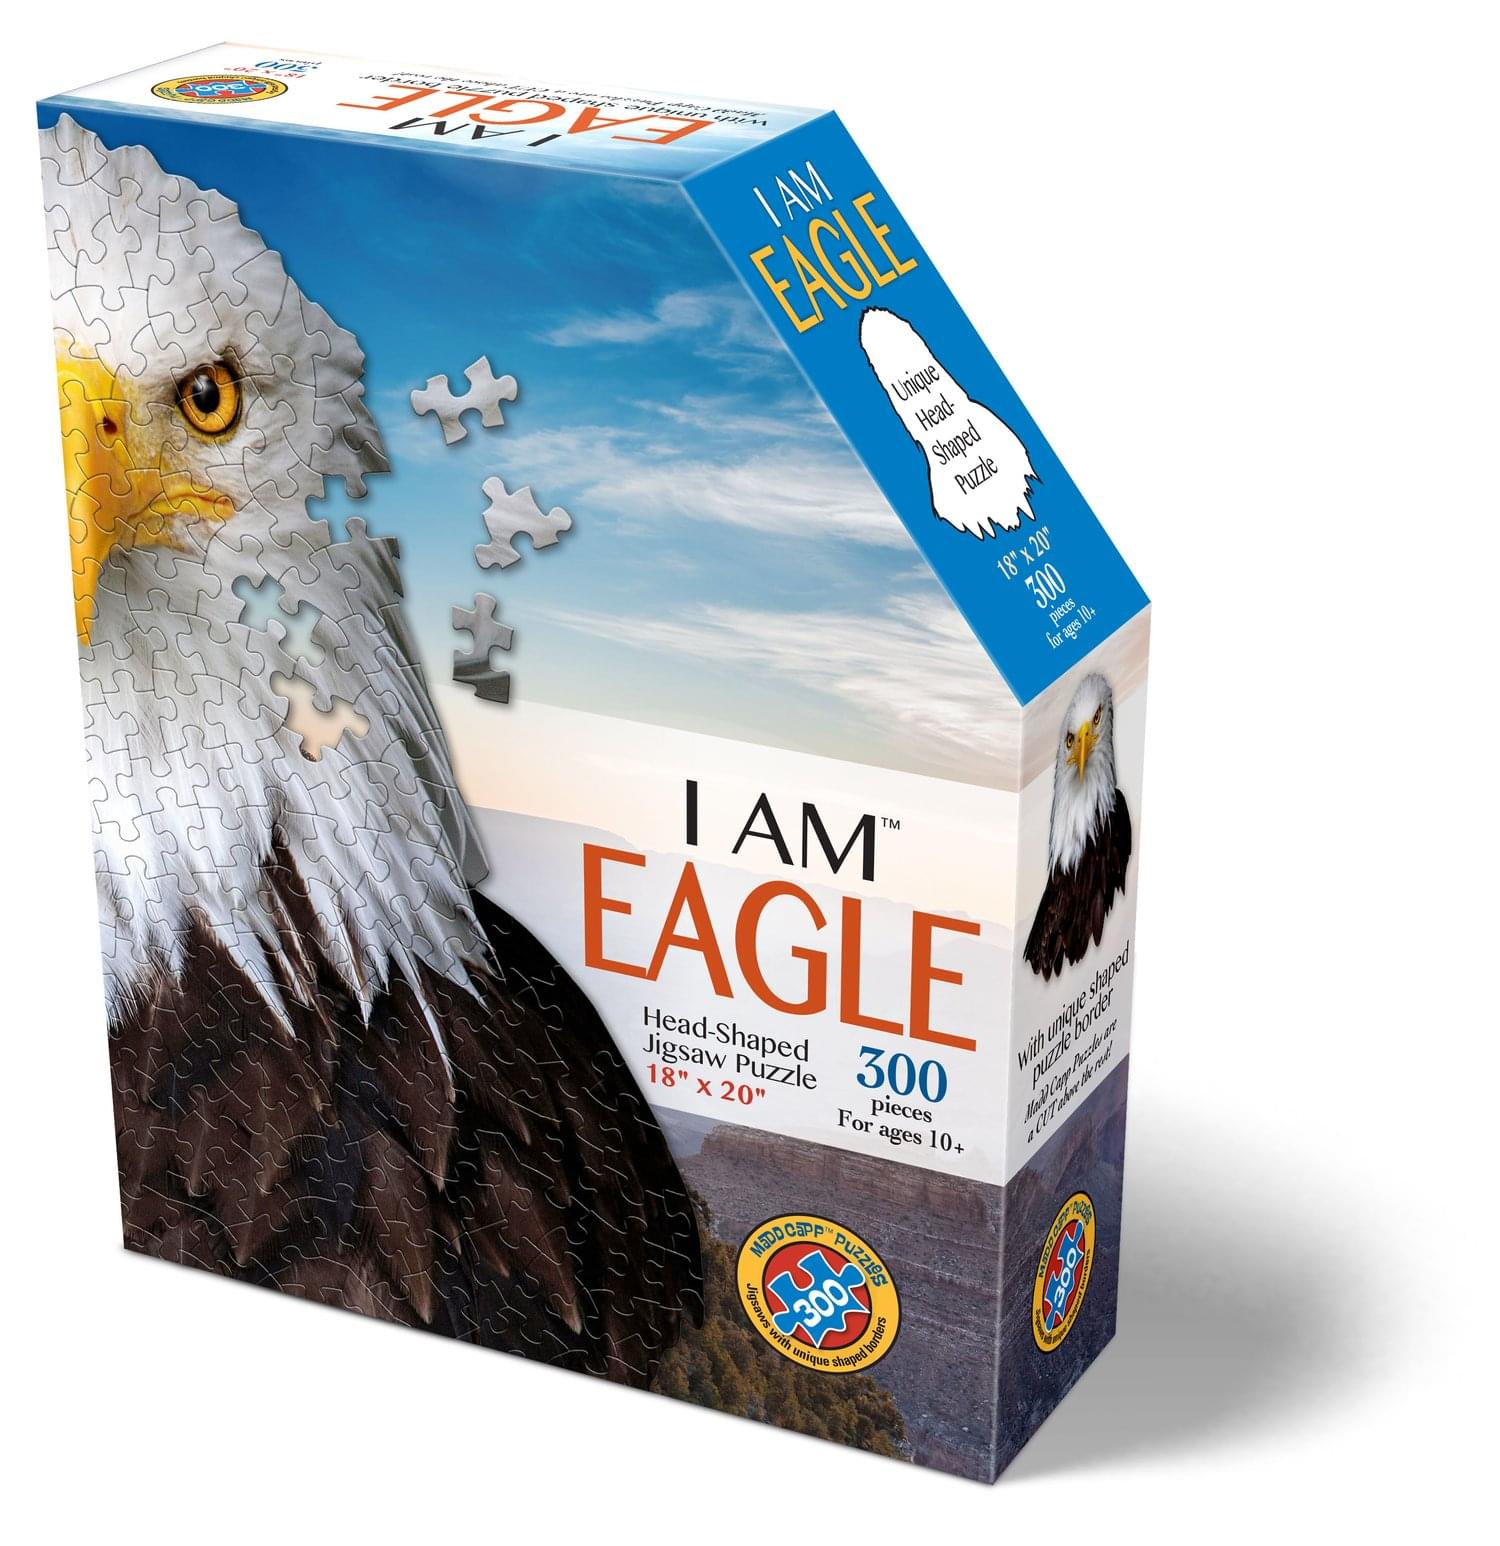 I AM Eagle 300 Piece Animal Head-Shaped Jigsaw Puzzle